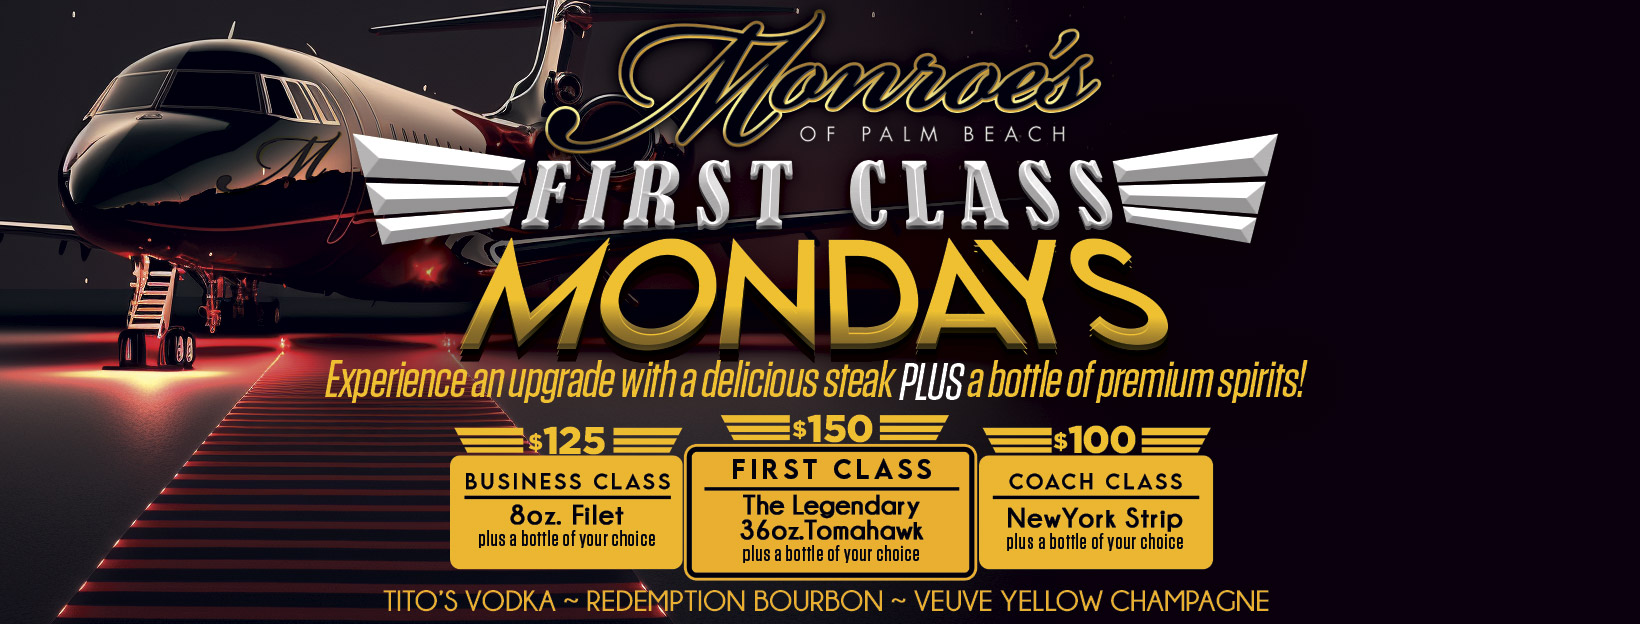 First Class Mondays at Monroe's Palm Beach